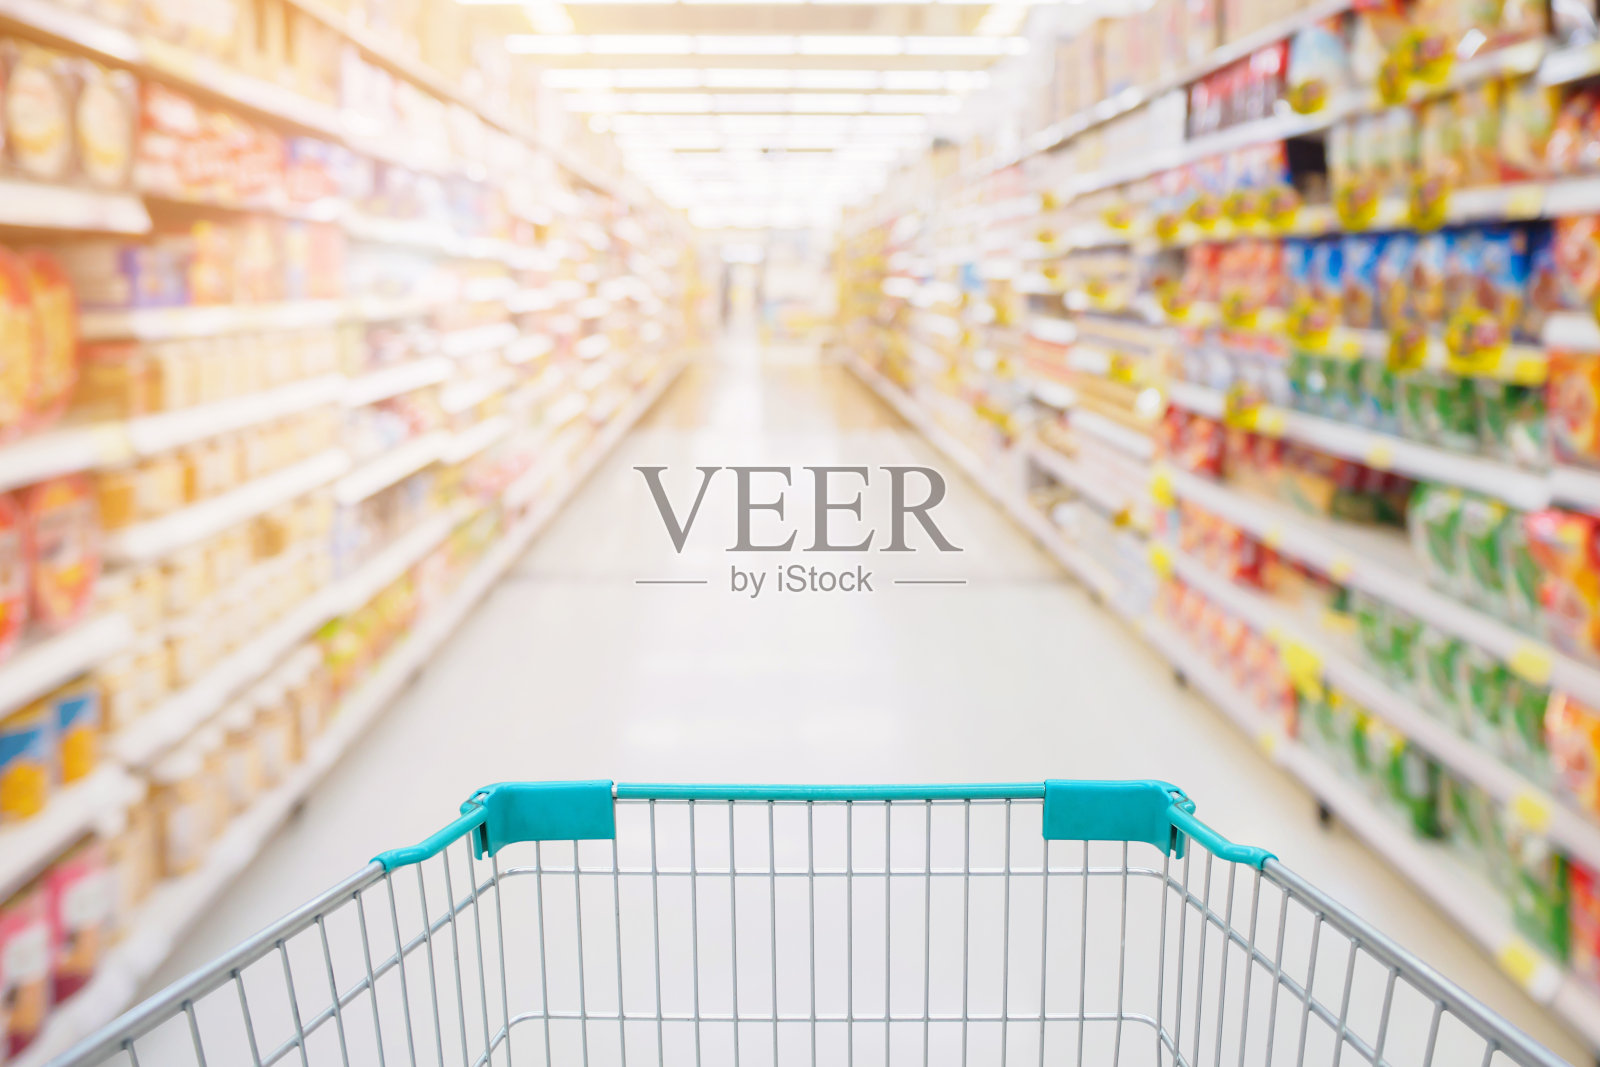 购物车视图在超市过道与产品货架抽象模糊散焦背景照片摄影图片